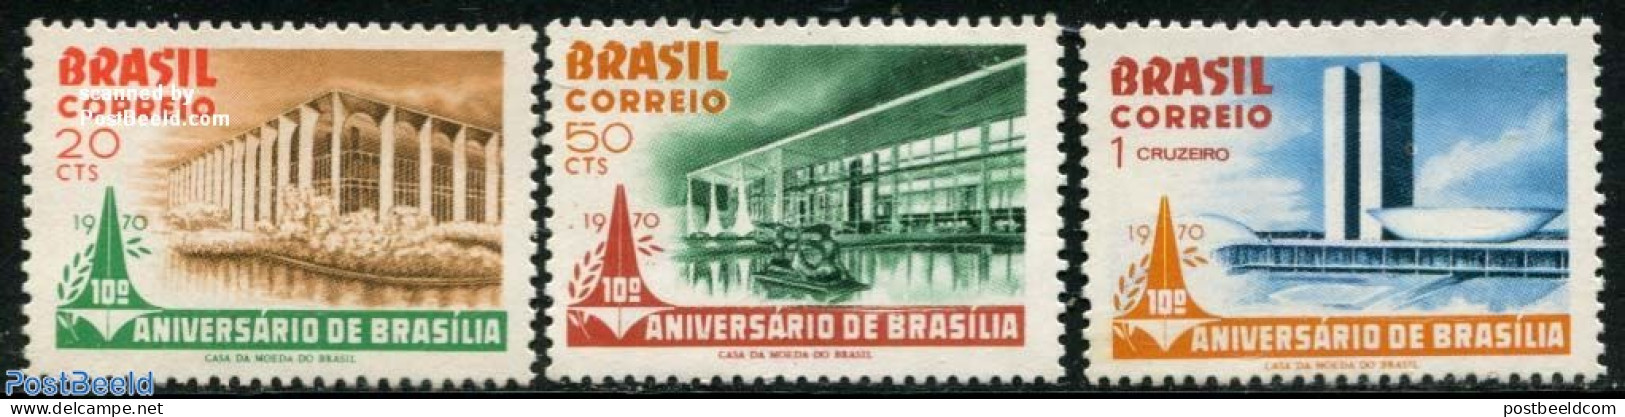 Brazil 1970 Brasilia 3v, Mint NH, Art - Modern Architecture - Ongebruikt